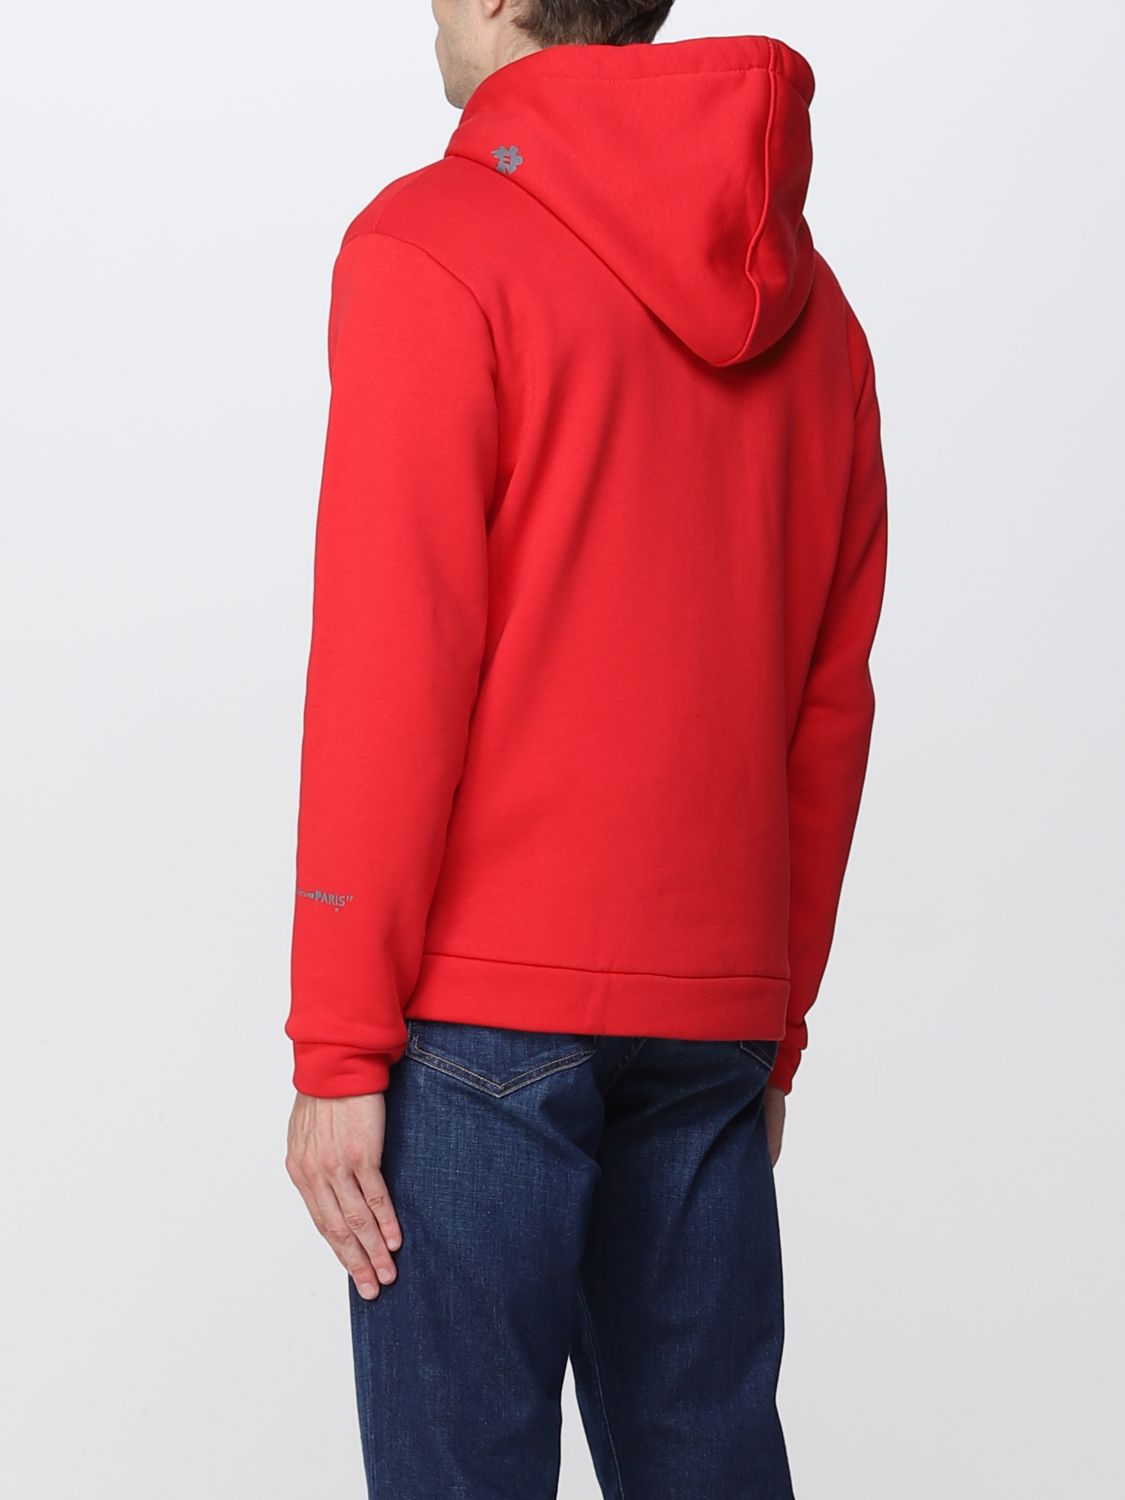 Pullover Soie Daniele Alessandrini pour homme en coloris Rouge Homme Vêtements Pulls et maille Pulls col en v 